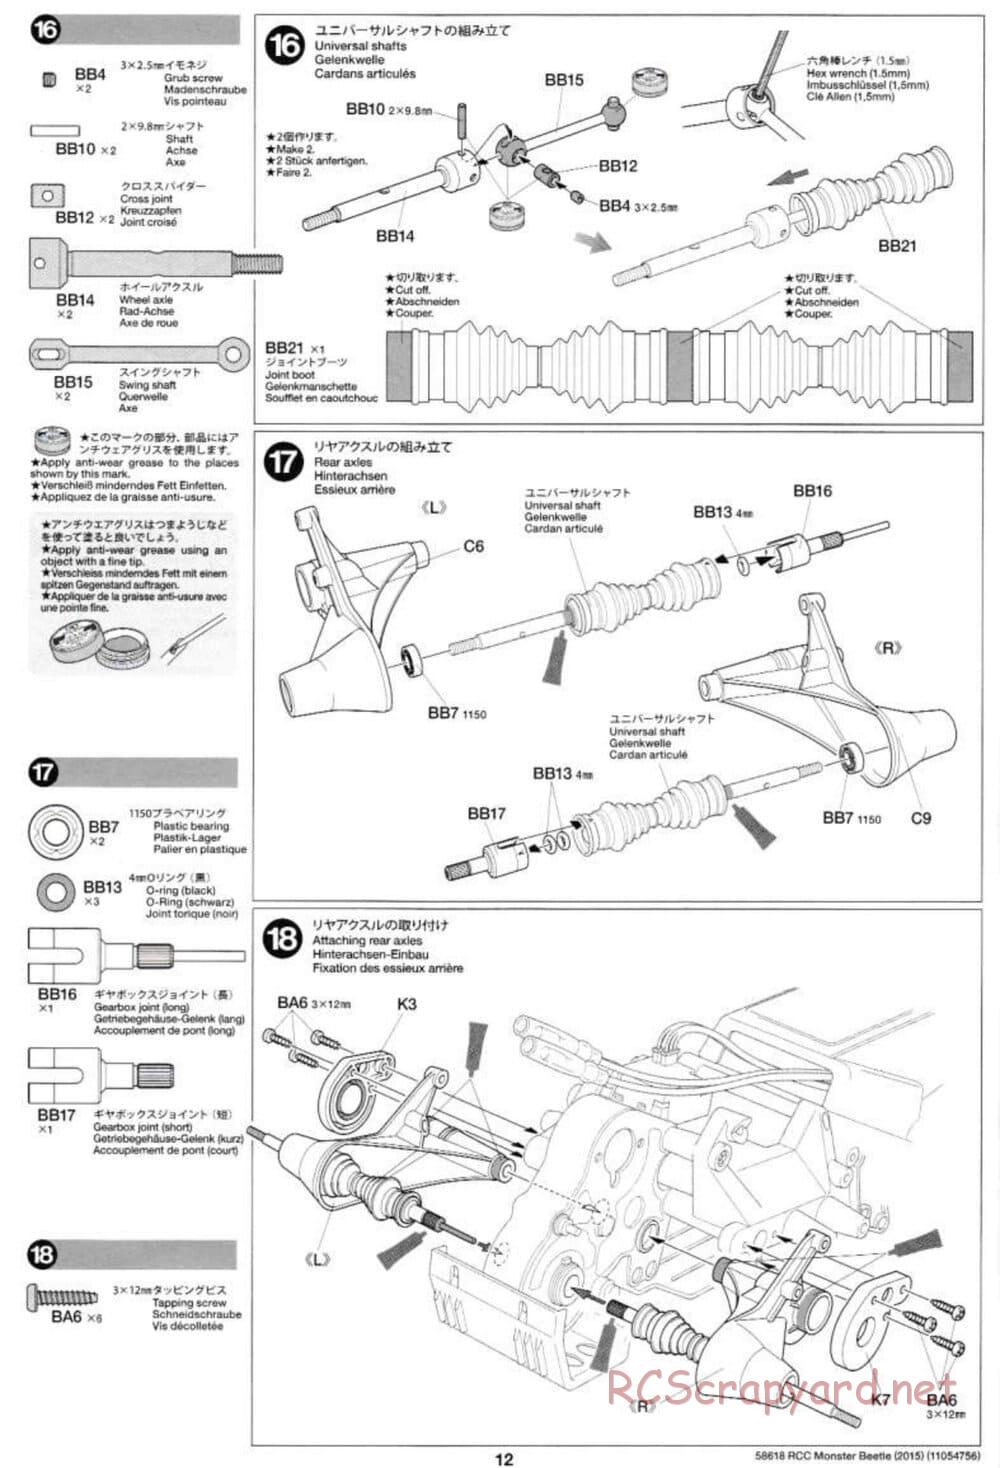 Tamiya - Monster Beetle 2015 - ORV Chassis - Manual - Page 12